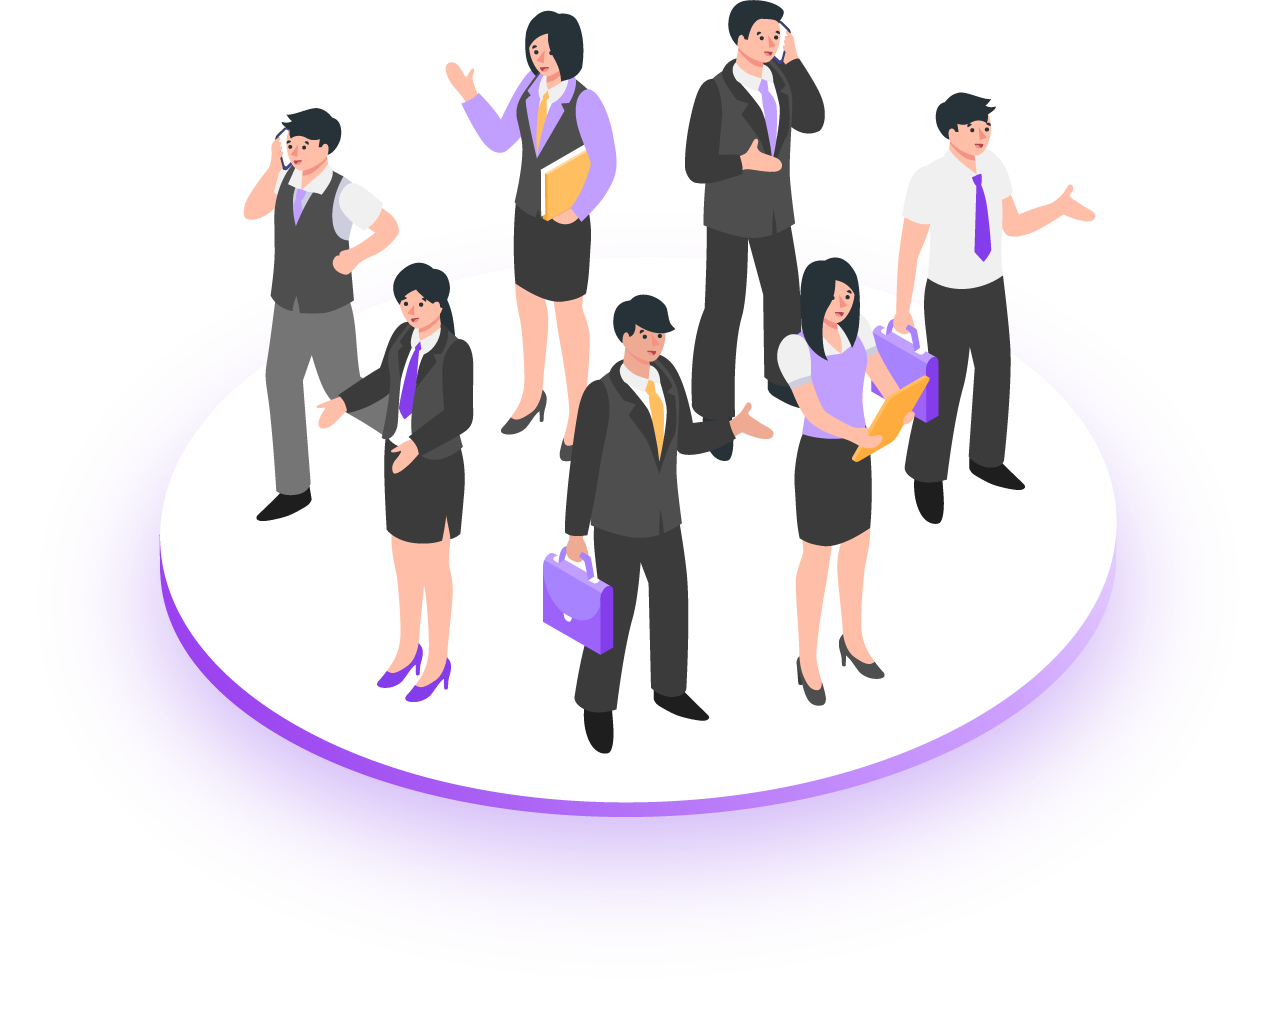 illustration vectorielle en isométrie de personnes en costumes sur un cercle blanc et violet.